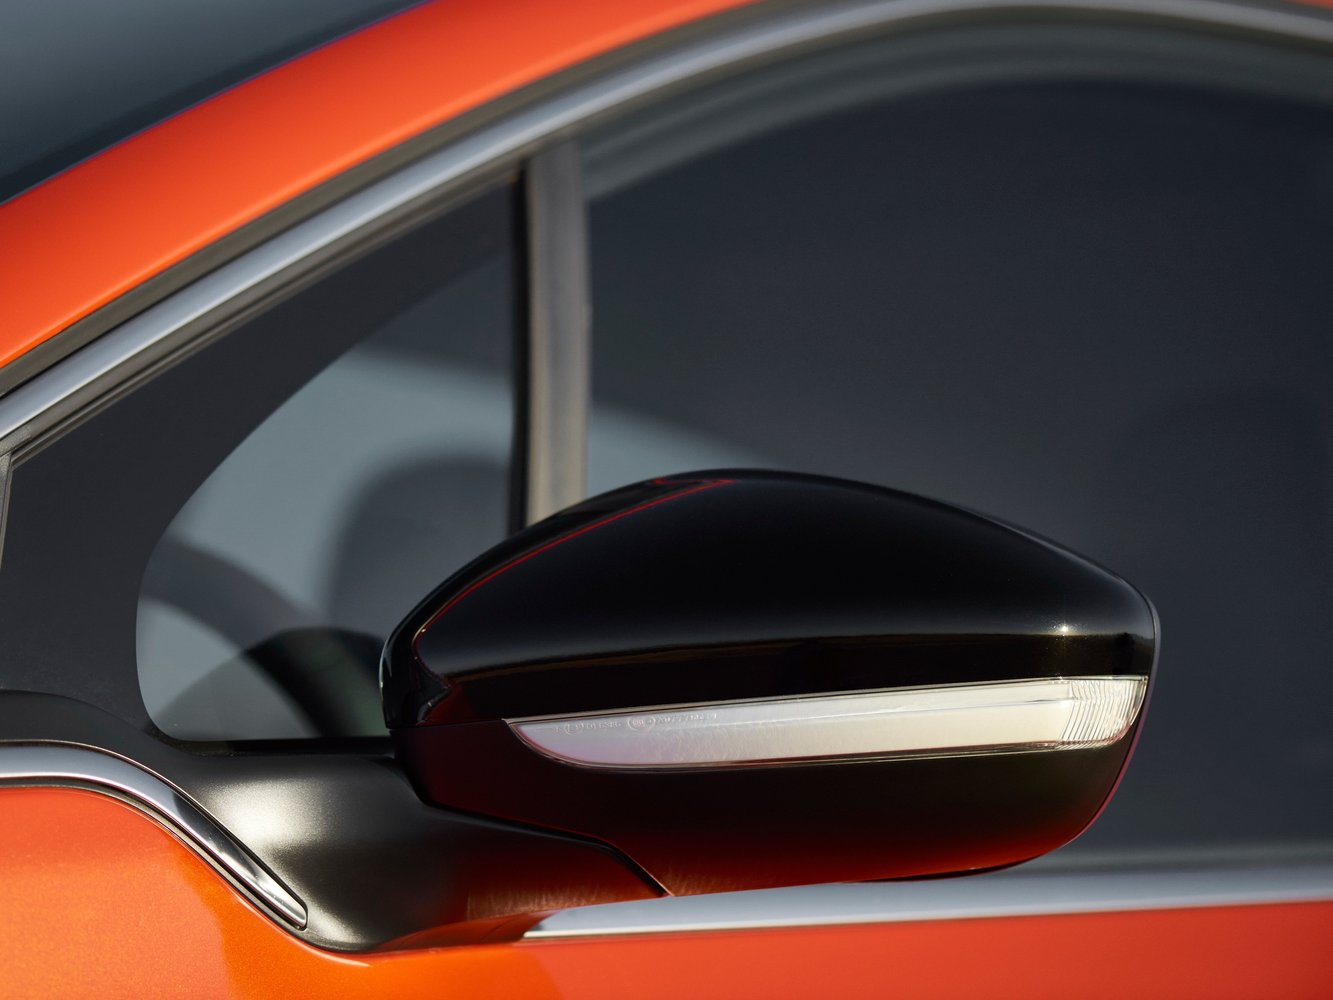 хэтчбек 5 дв. Peugeot 208 2015 - 2016г выпуска модификация 1.0 MT (68 л.с.)